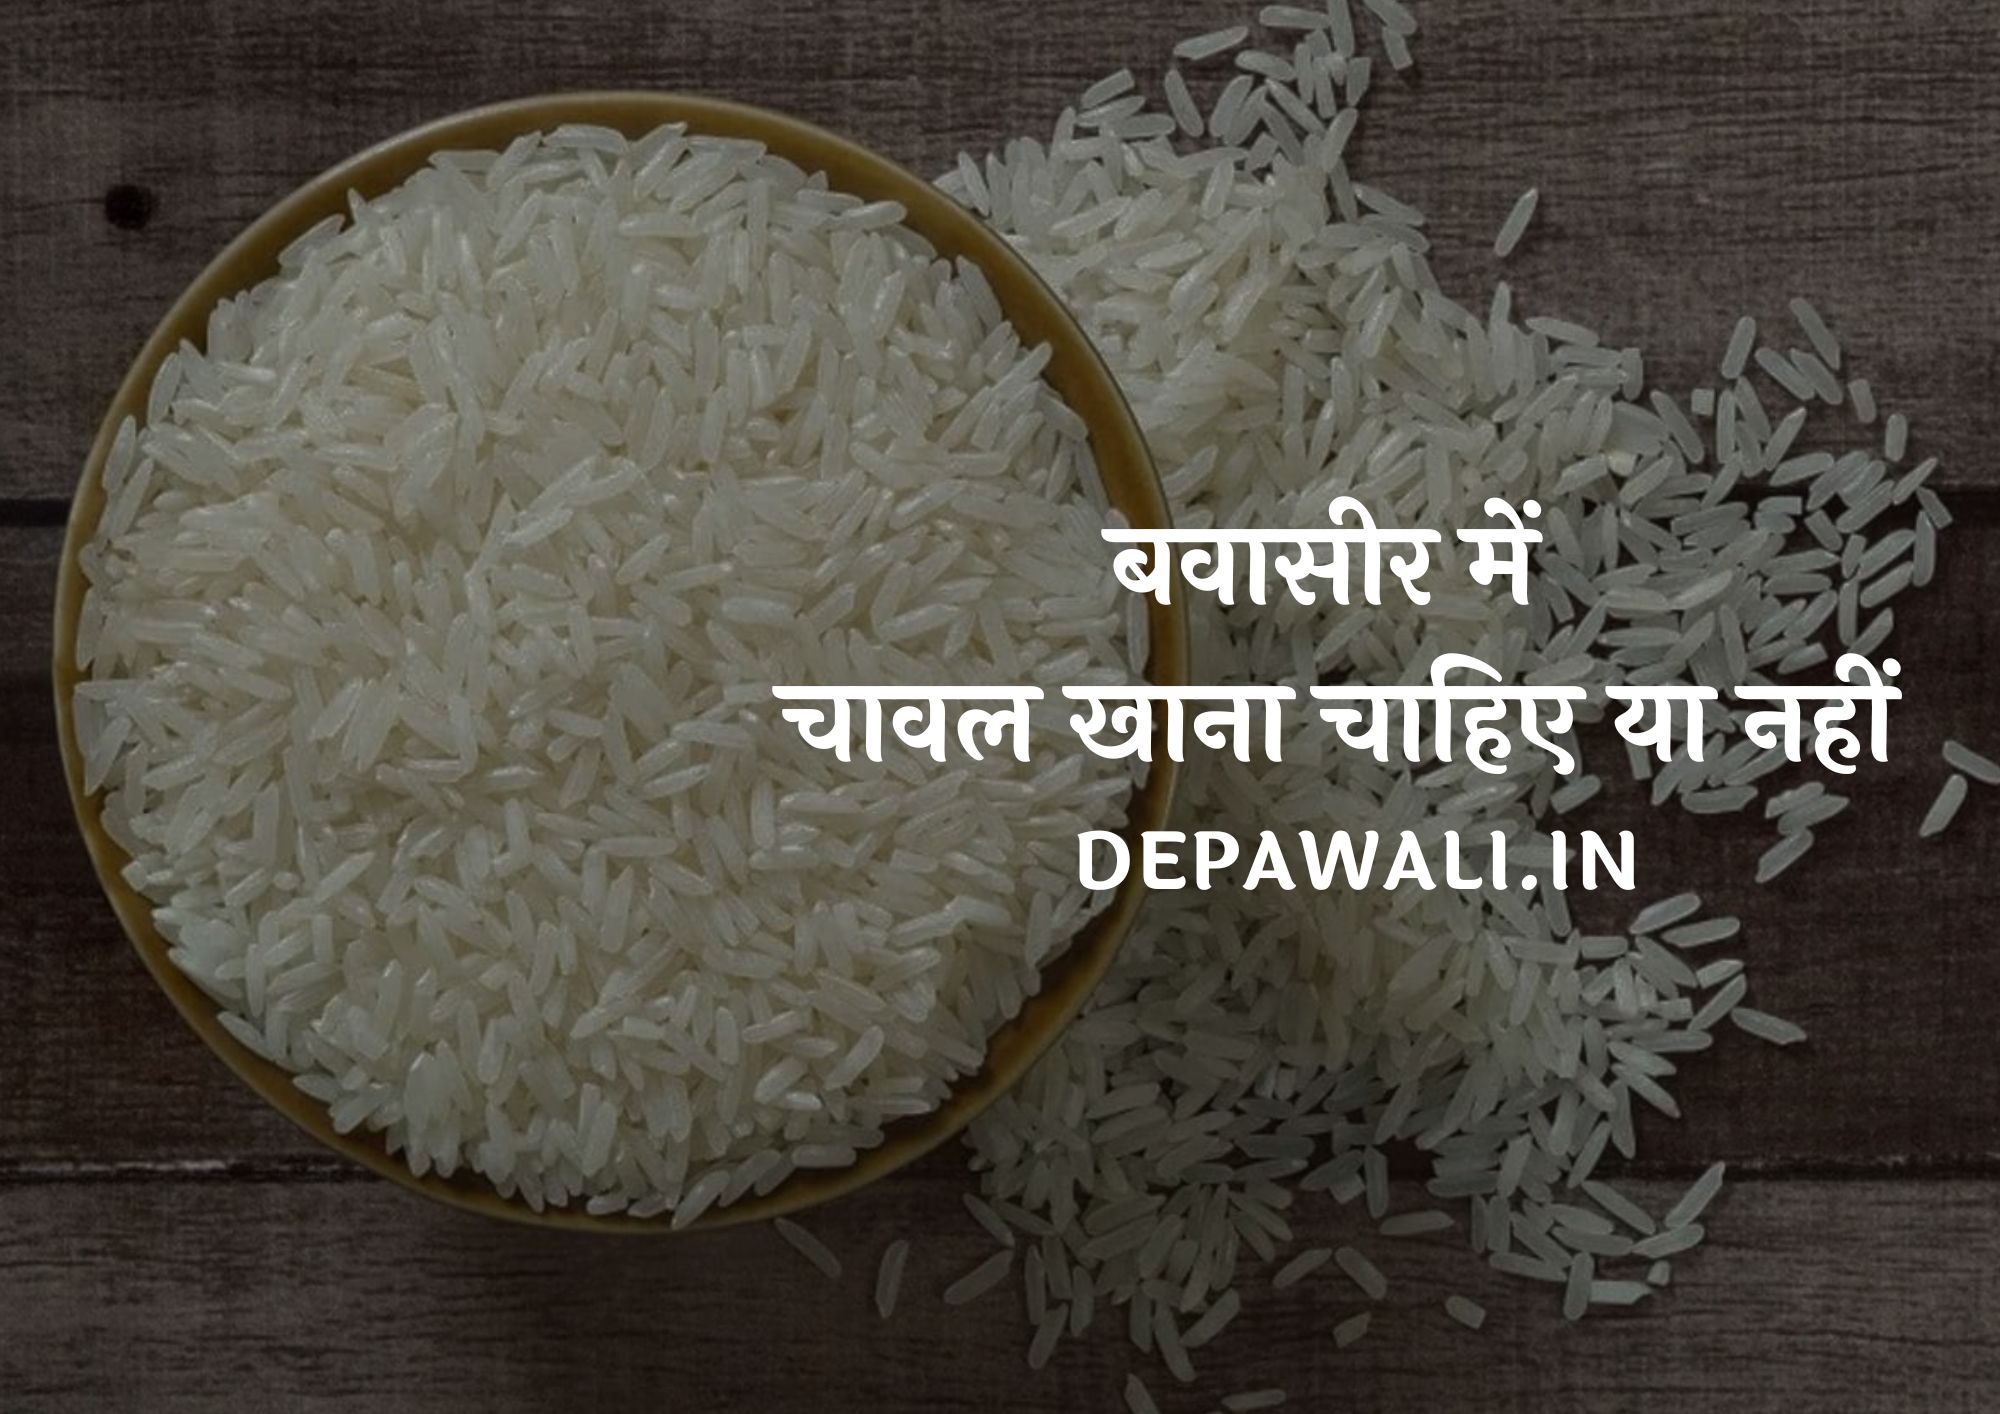 बवासीर में चावल खाना चाहिए या नहीं (Bawasir Me Chawal Khana Chahiye Ya Nahi)